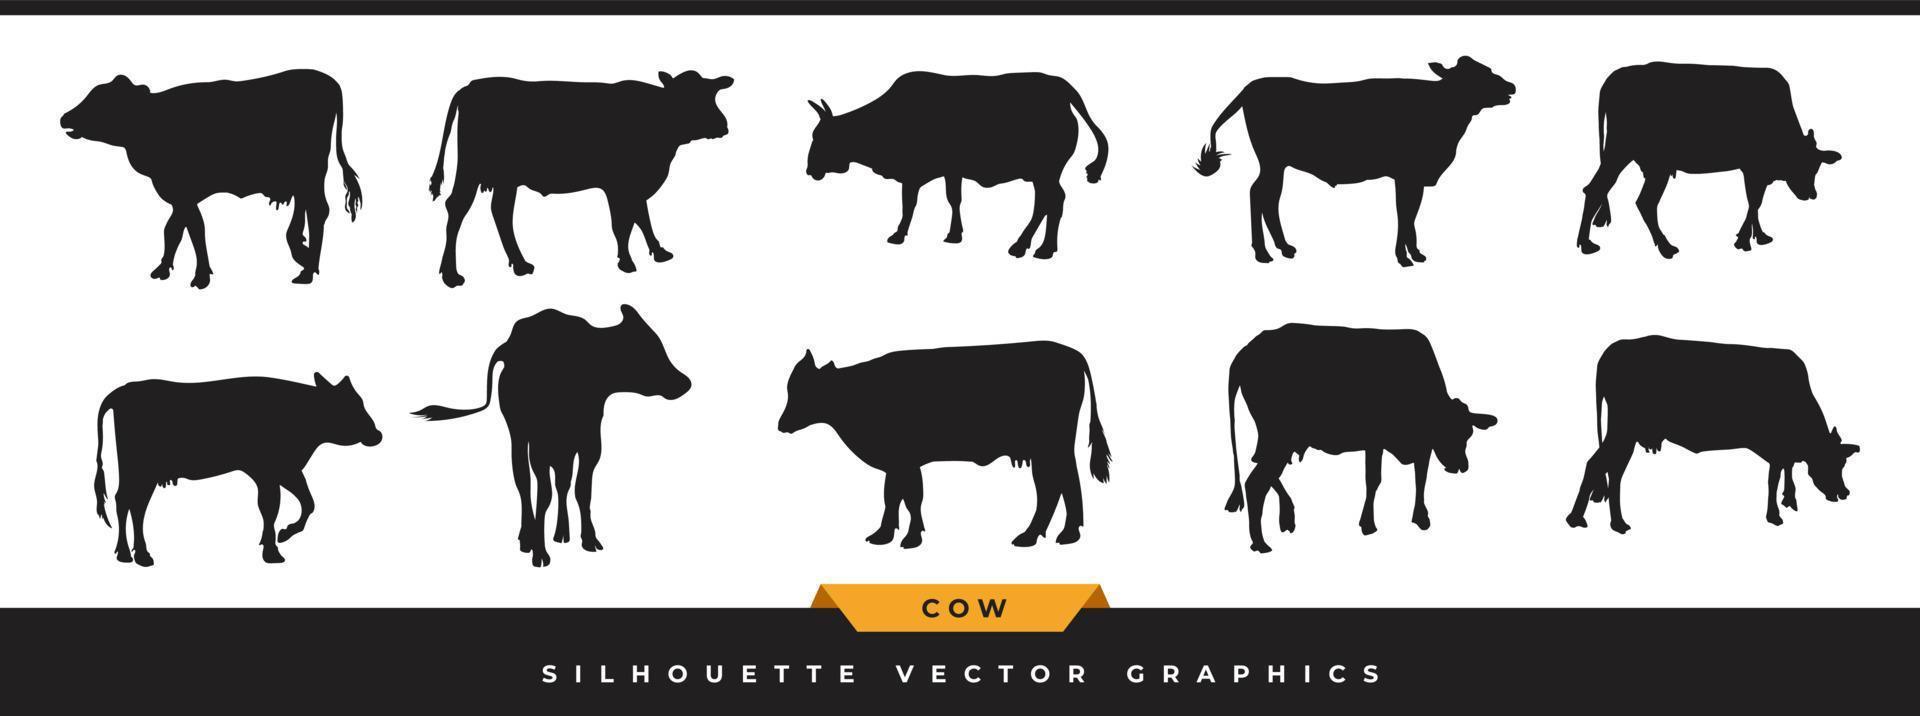 colección de silueta de vaca. gran conjunto de iconos de silueta de ganado, ganado. ilustración vectorial de animales de granja dibujada a mano en diferentes poses aisladas en fondo blanco. vector